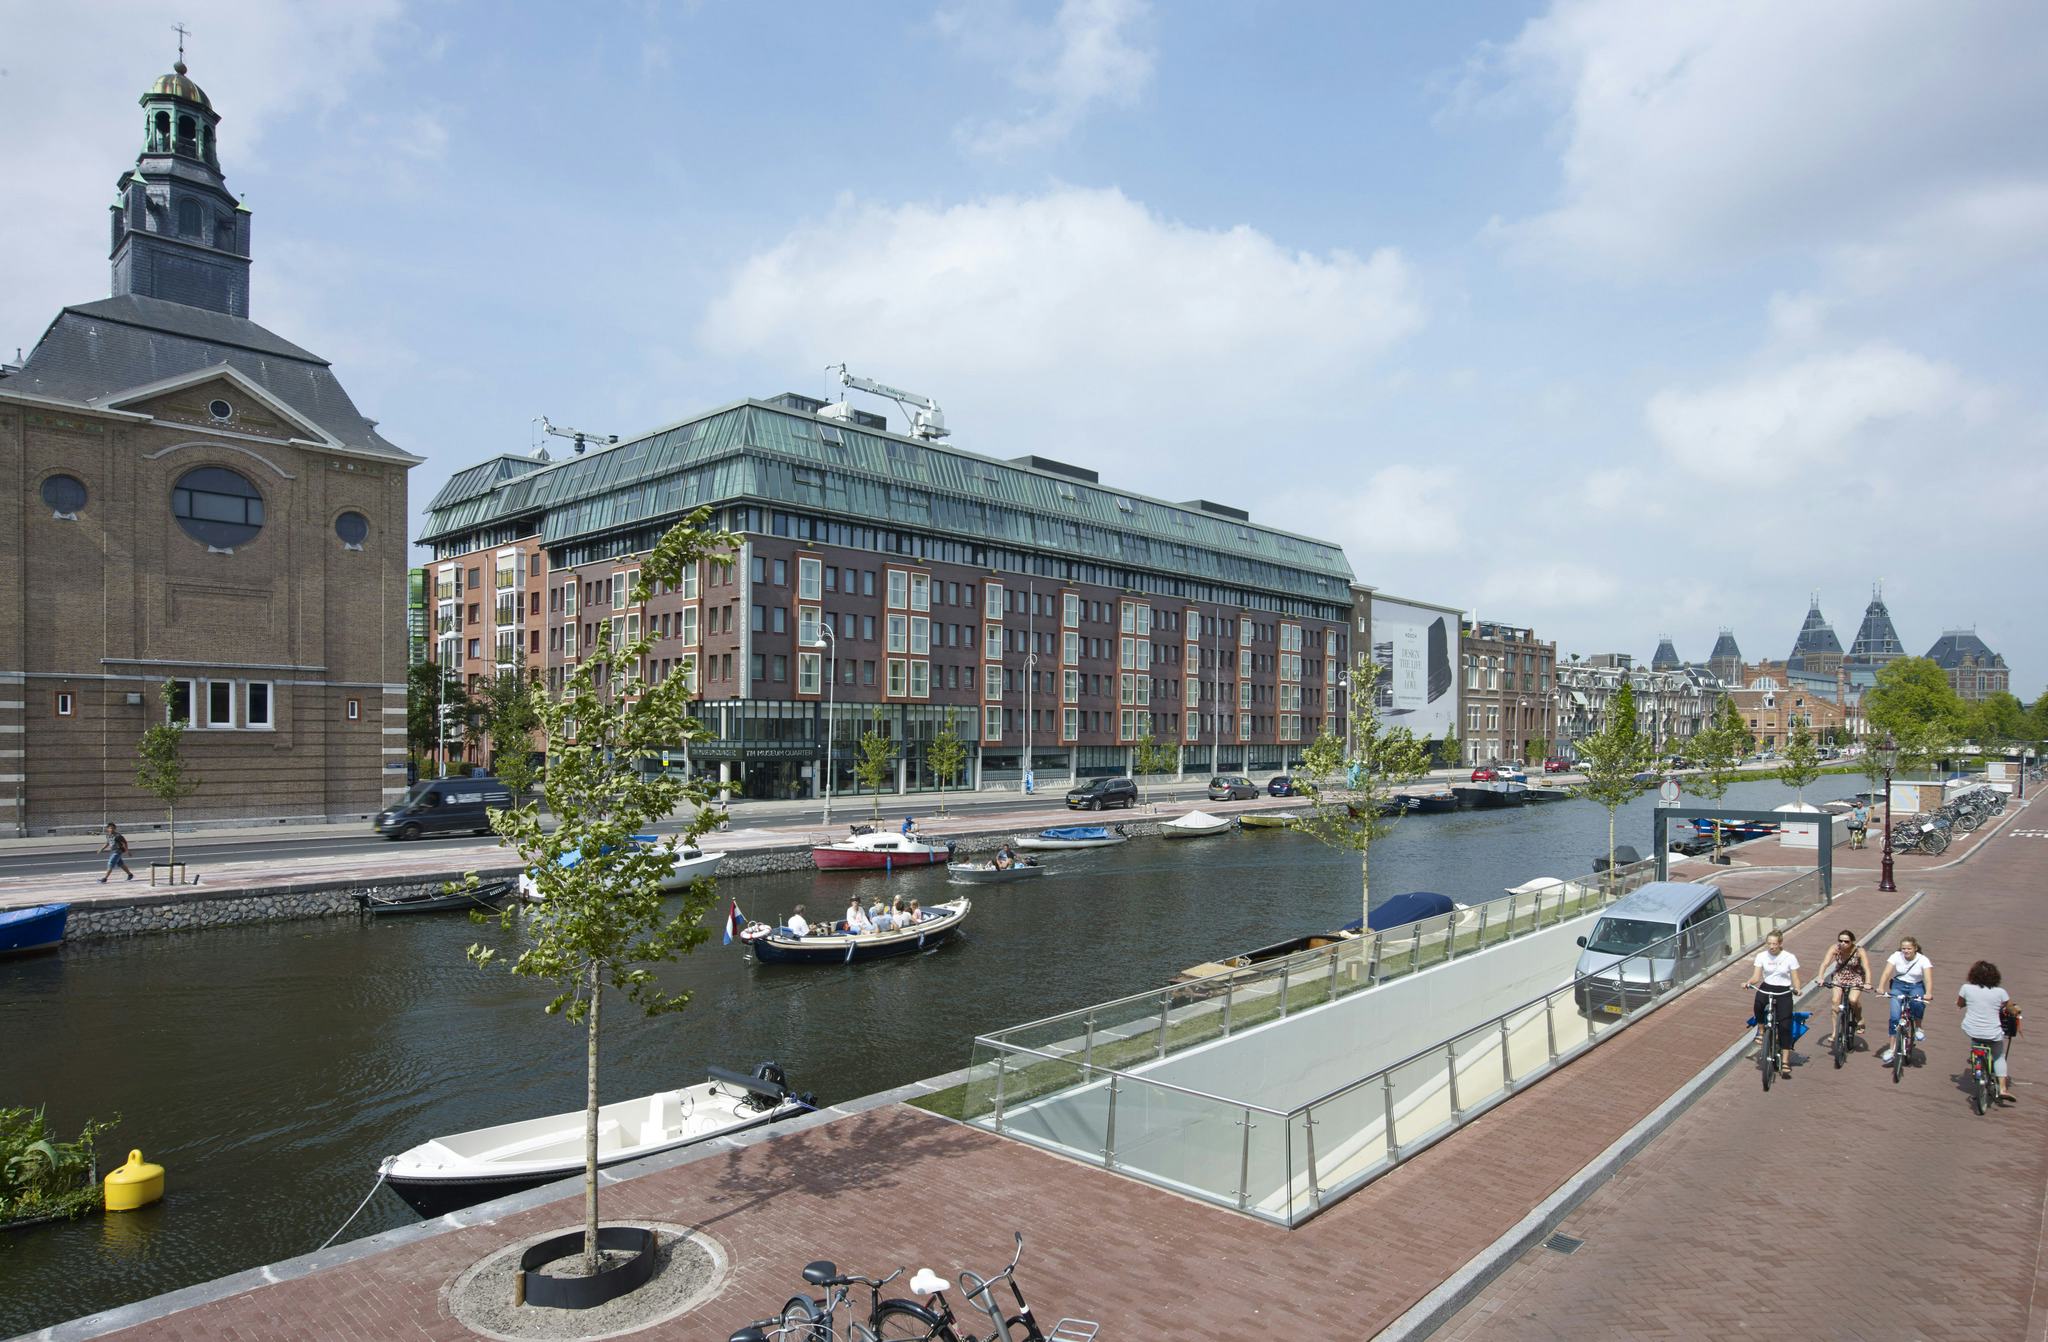 Albert Cuypgarage Amsterdam door ZJA Zwarts & Jansma Architecten. Beeld Jeroen Musch